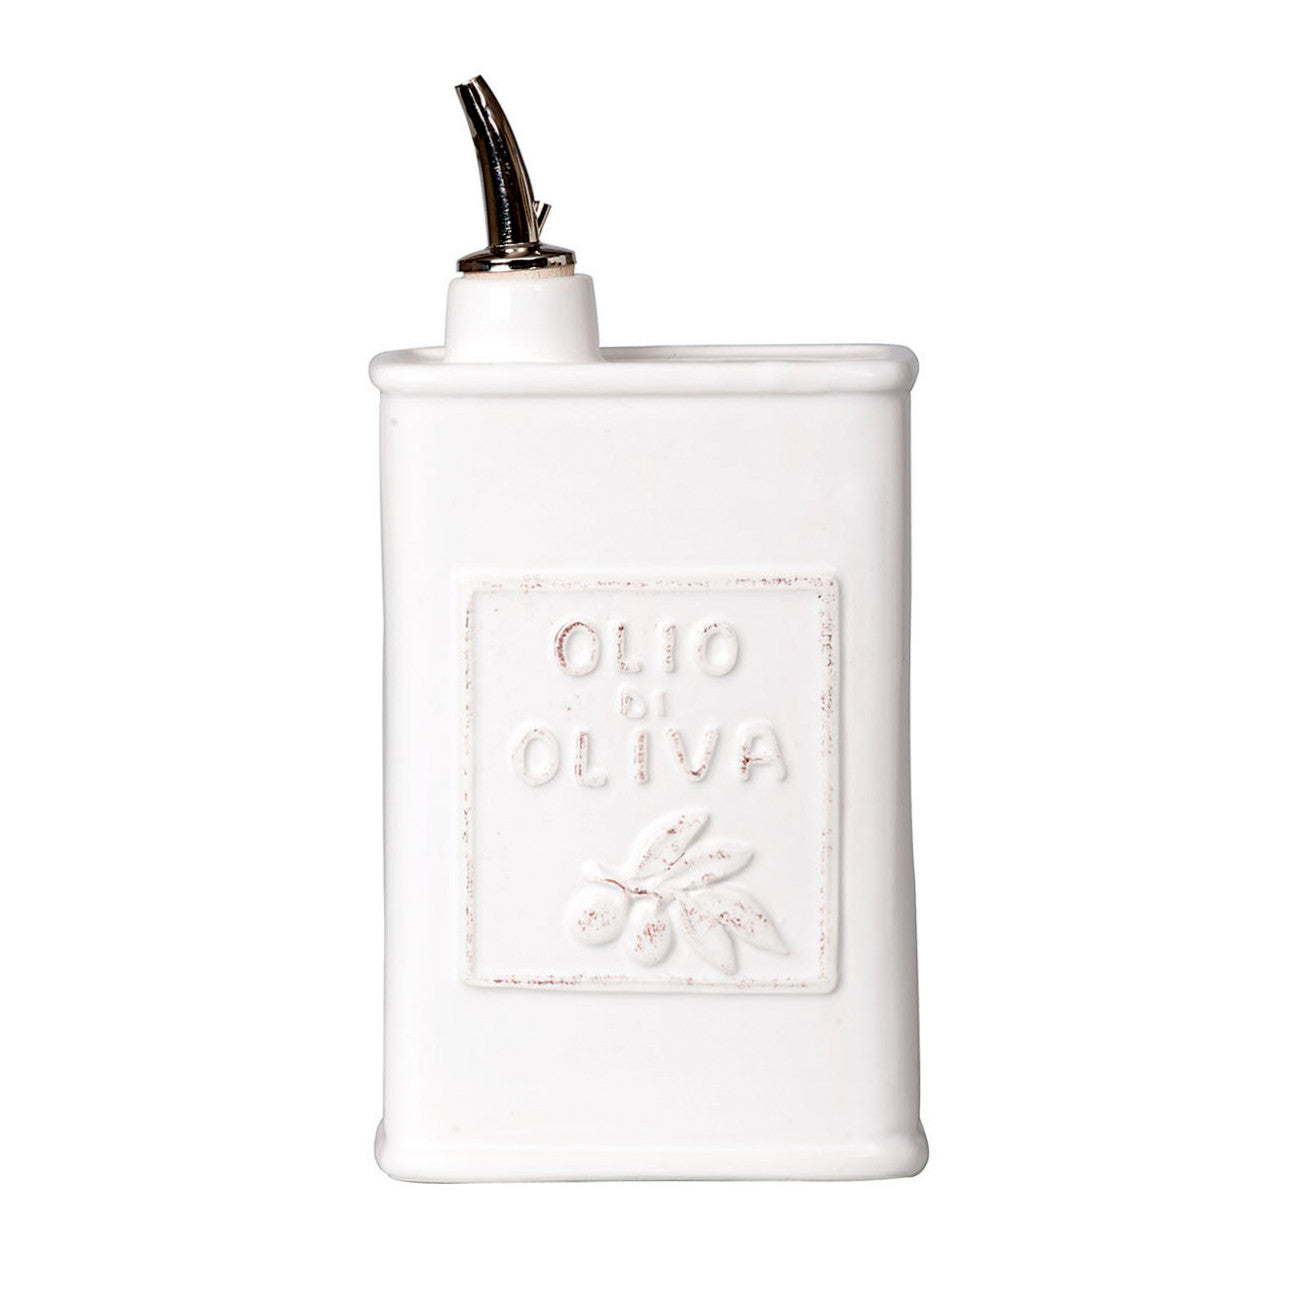 VIETRI: Lastra White Olive Oil Can Dispenser - Artistica.com